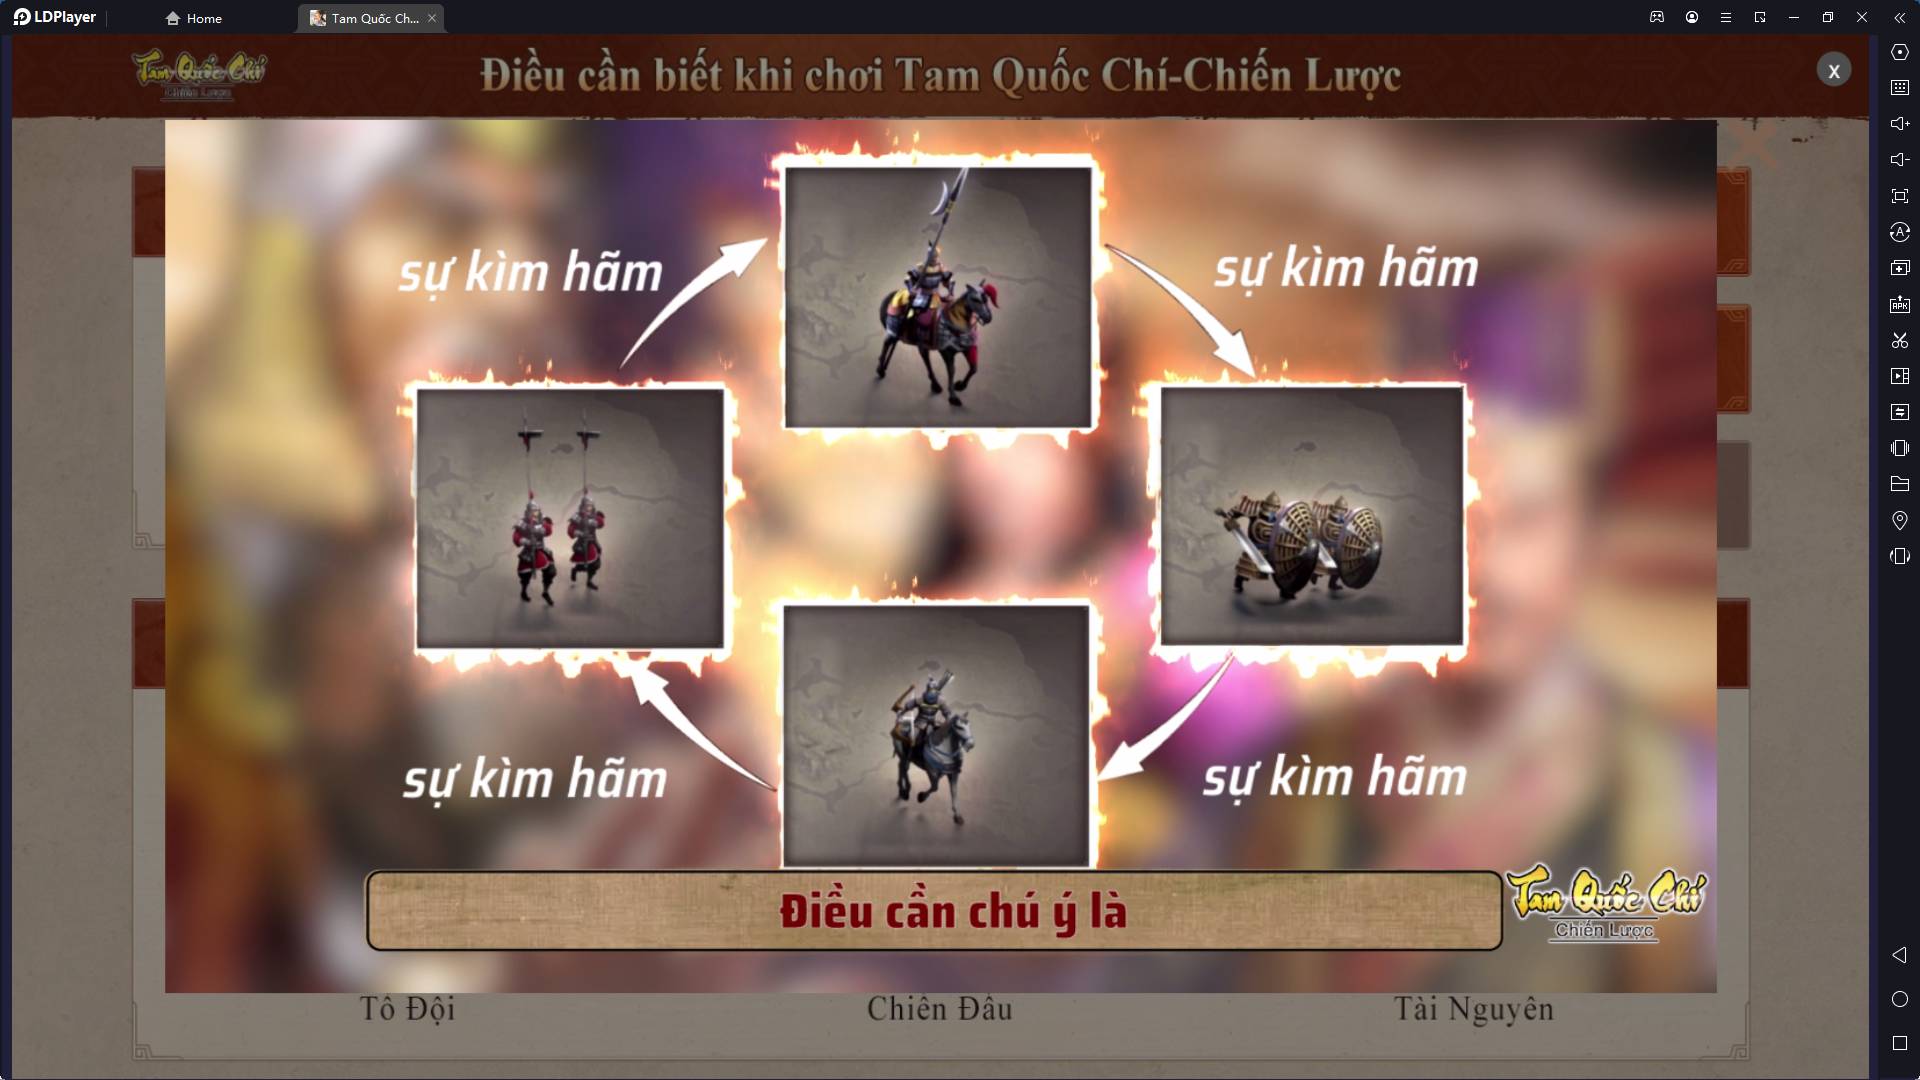 『HƯỚNG DẪN』Giới thiệu bom tấn SLG Tam Quốc Chí-Chiến Lược sắp ra mắt tại Việt Nam và những điểm cần lưu ý khi chơi tựa game này